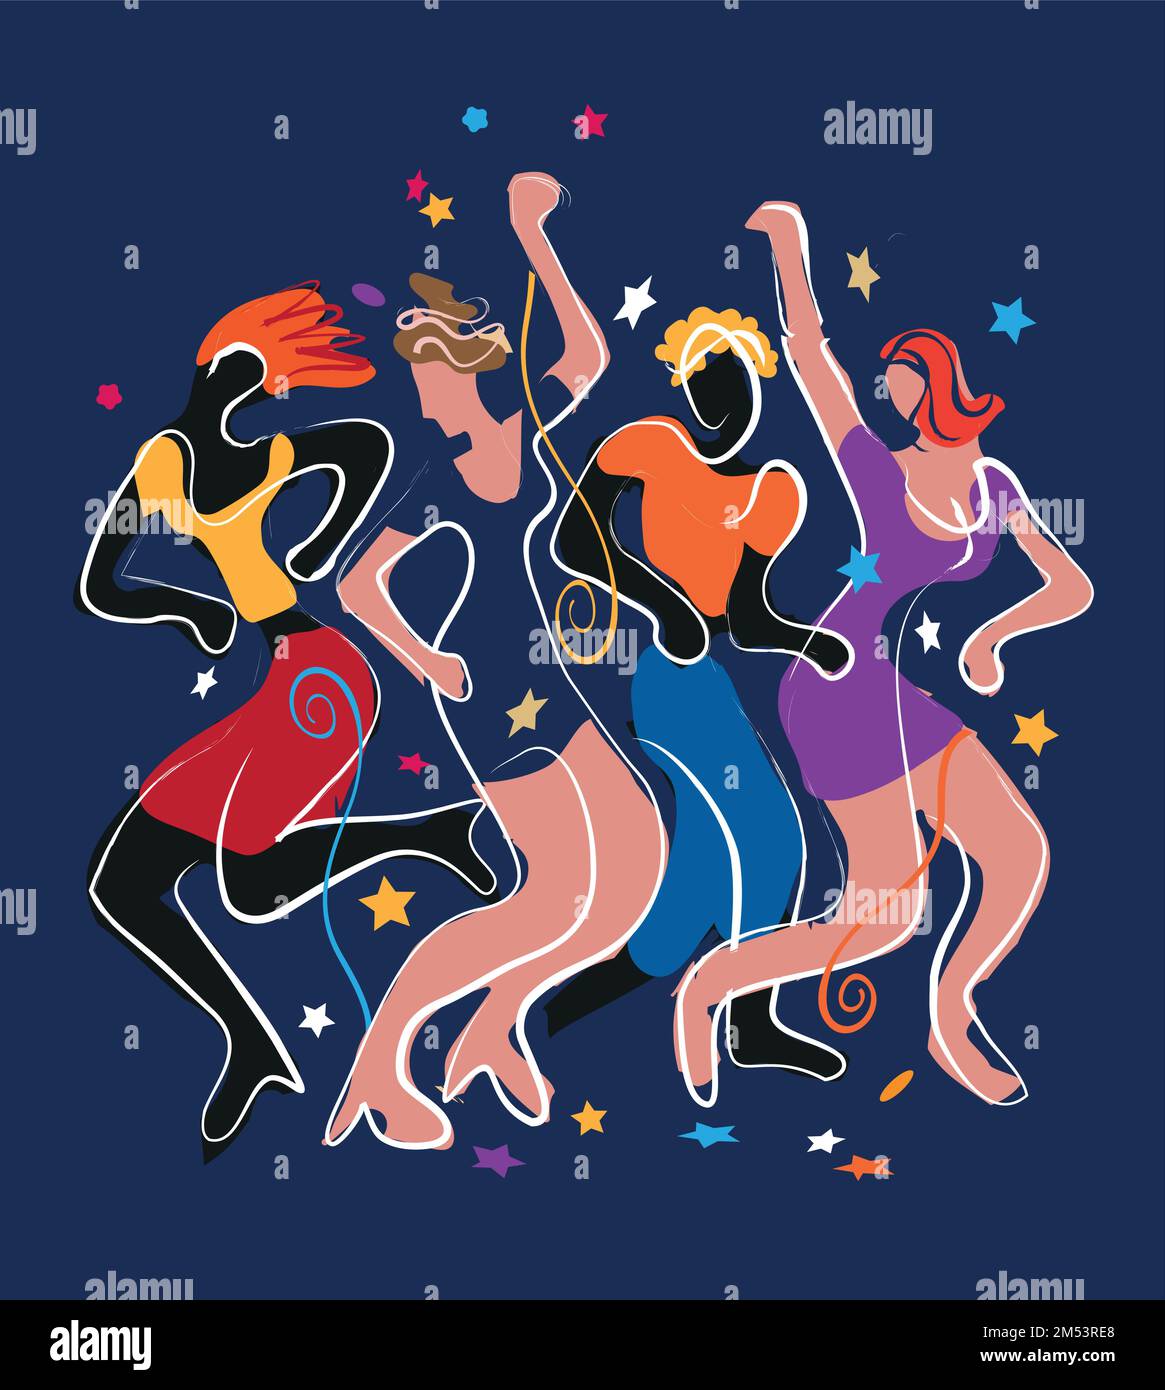 Festa dei giovani che ballano in discoteca, festa di Capodanno. Illustrazione colorata espressiva di persone che ballano animate su sfondo blu. Illustrazione Vettoriale